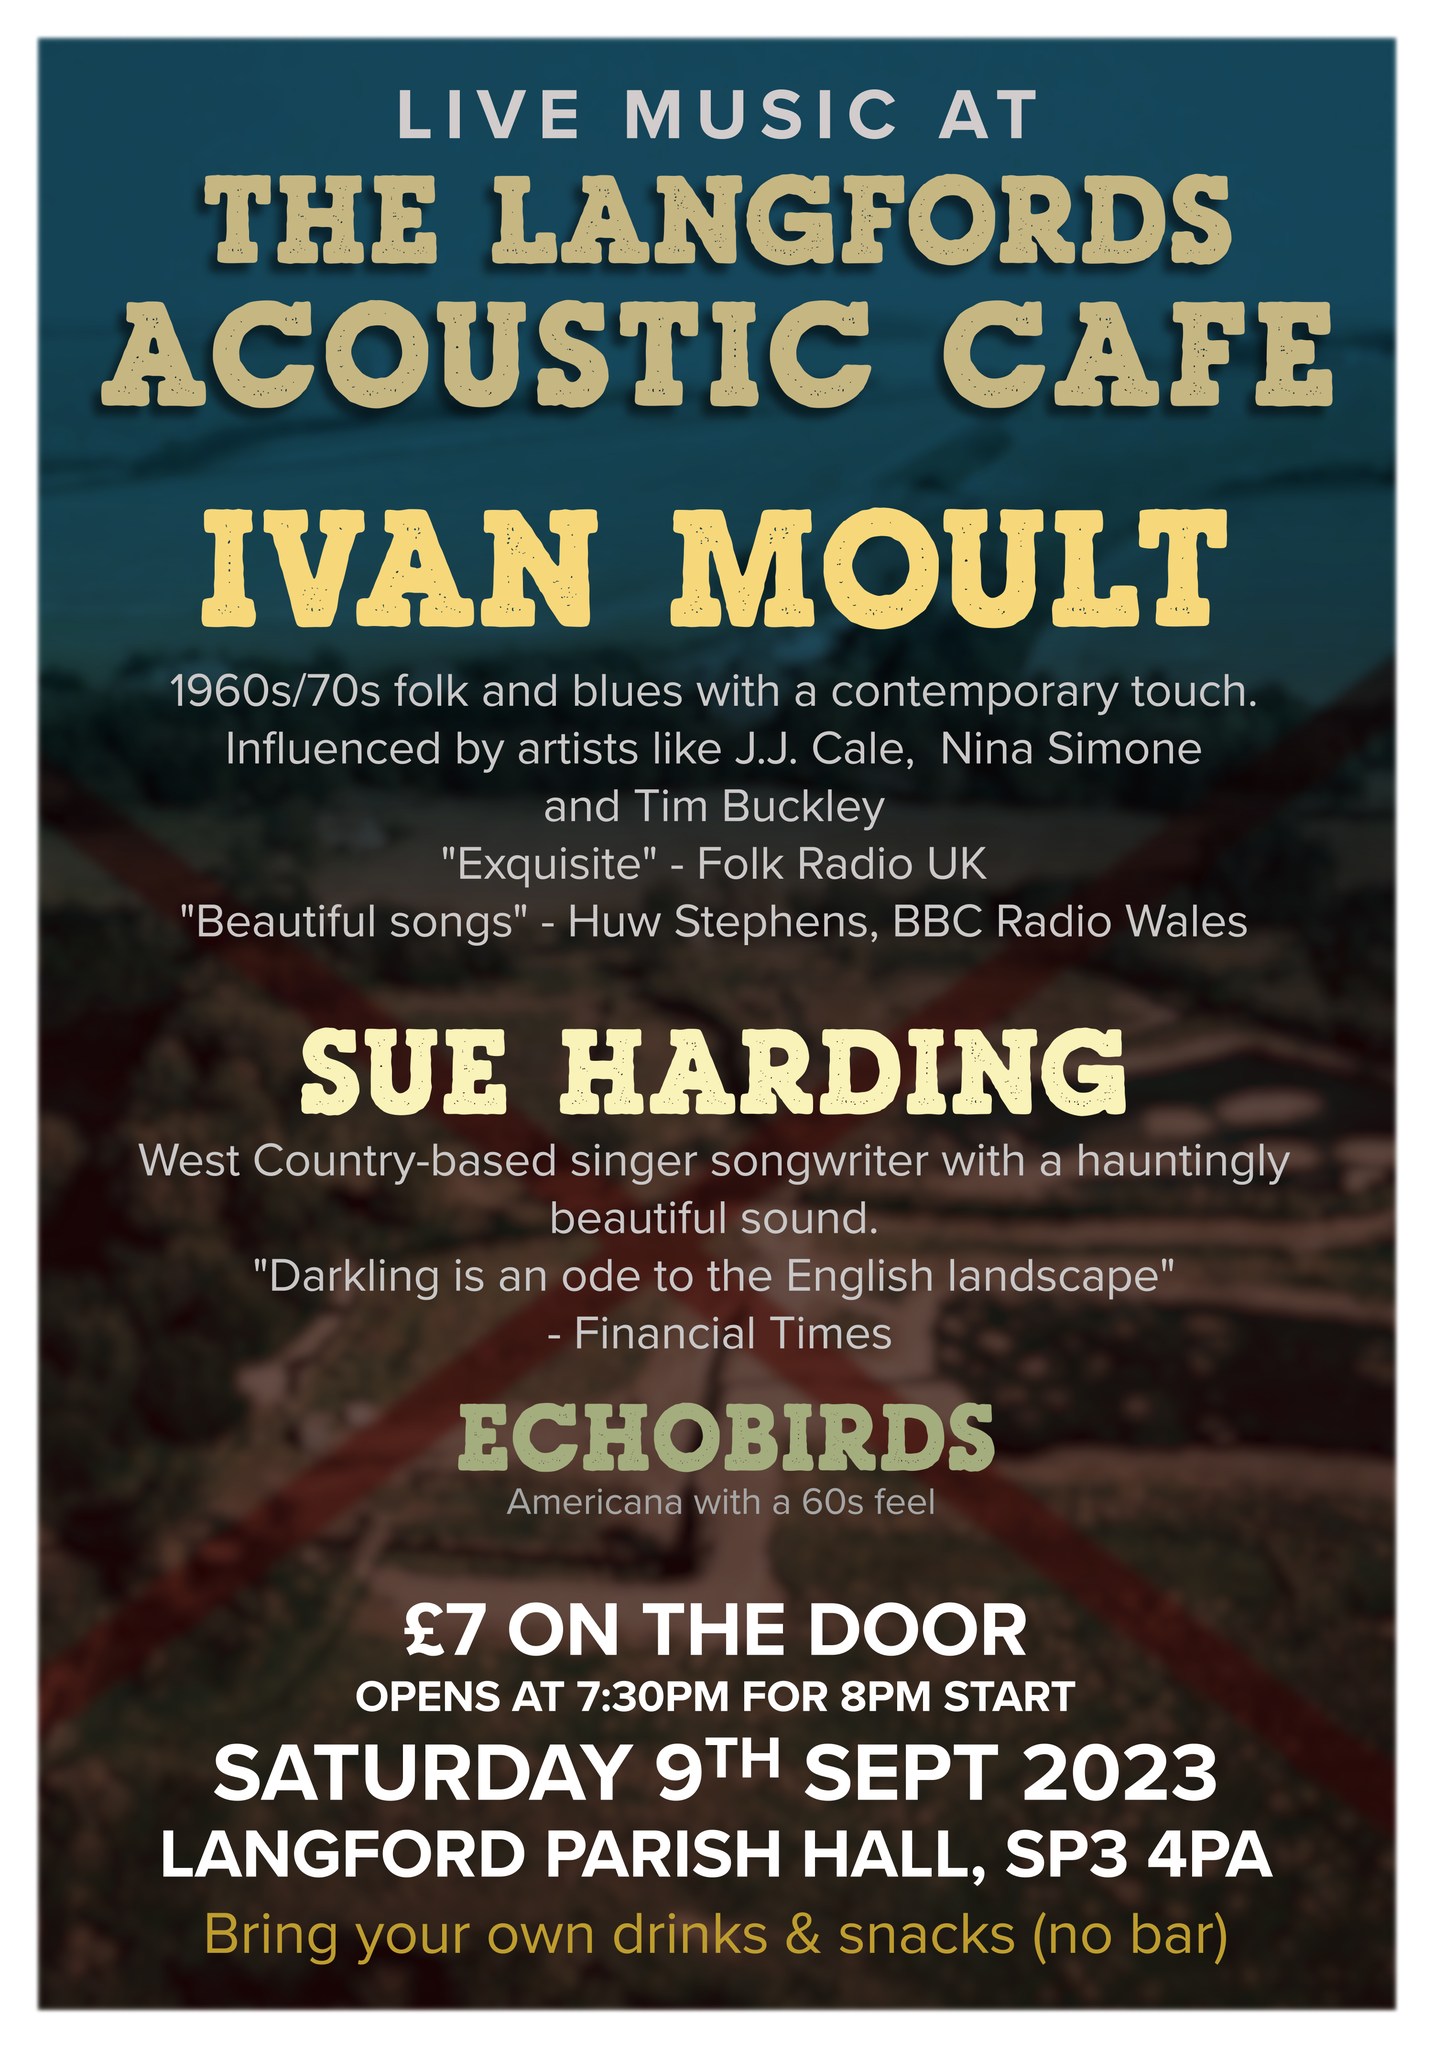 Langfords Acoustic Cafe: Ivan Moult + Sue Harding + Echobirds